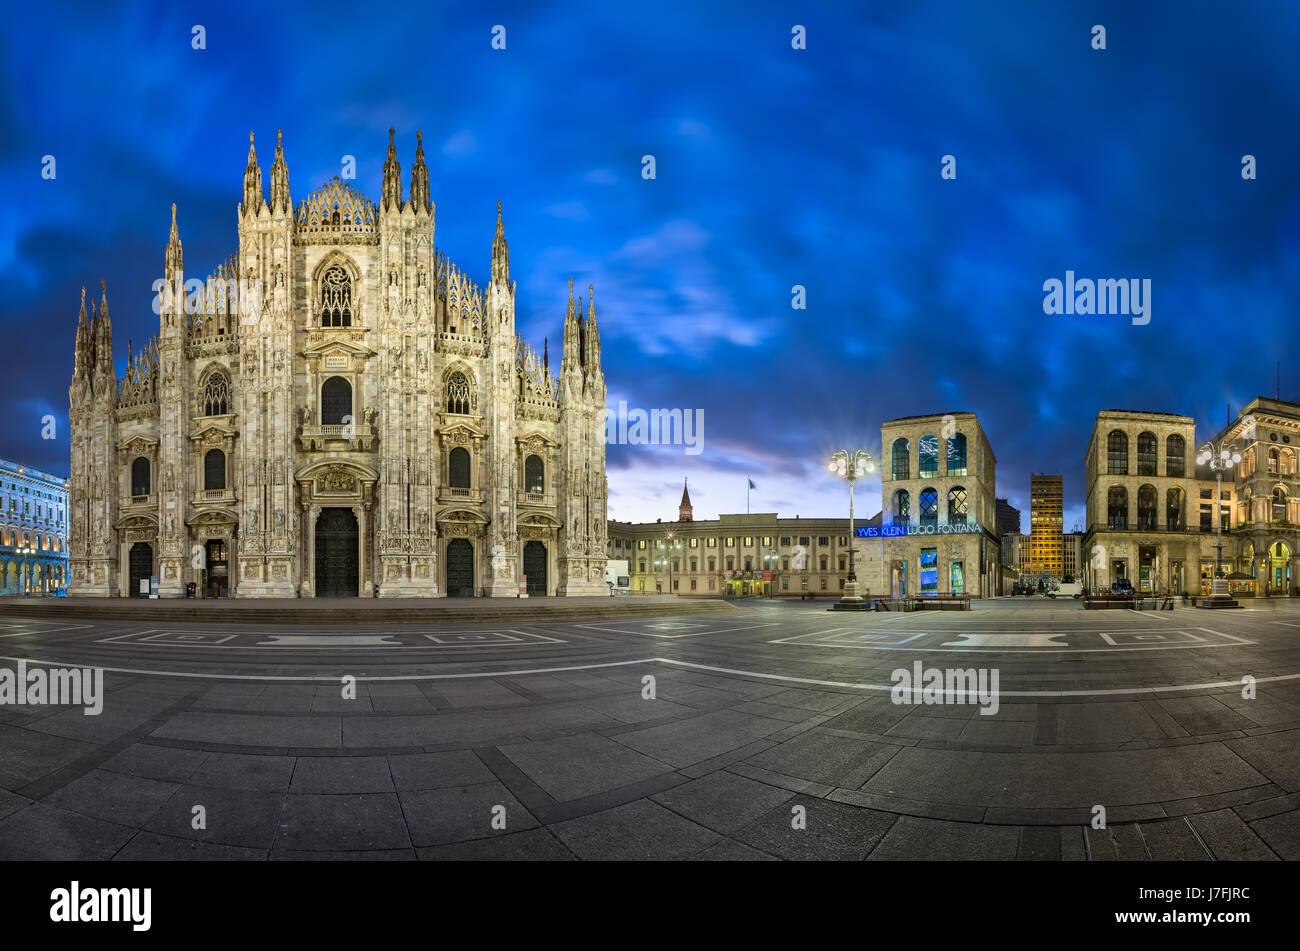 Mailand, Italien - 13. Januar 2015: Duomo di Milano (Mailand Kathedrale) und Piazza del Duomo in Mailand, Italien. Mailänder Dom ist die zweitgrößte katholische Stockfoto